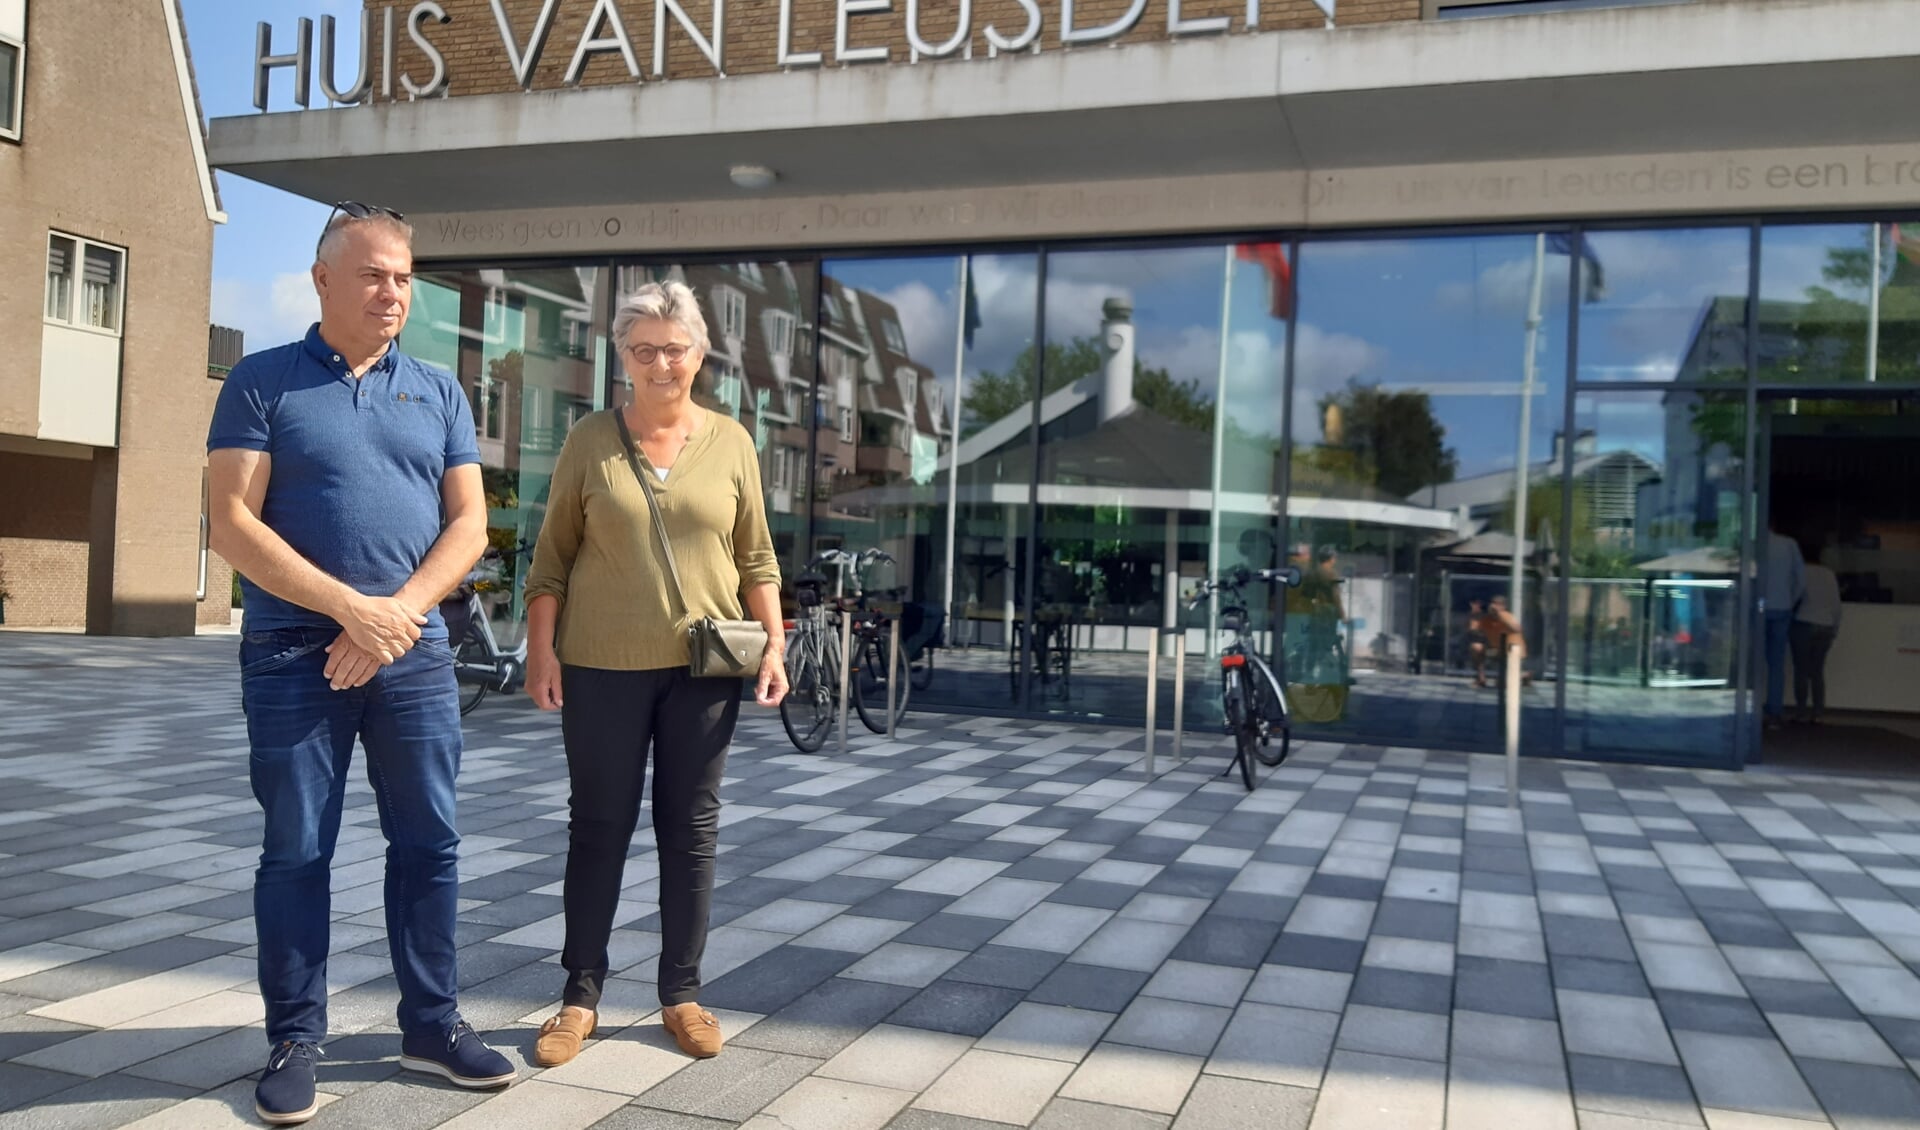 Peter van Breugel en Thea Maas willen dat Leusden opnieuw hoog scoort in de verkiezing 'Fietsstad van het jaar'. ,,We mikken op de eerste plaats.''